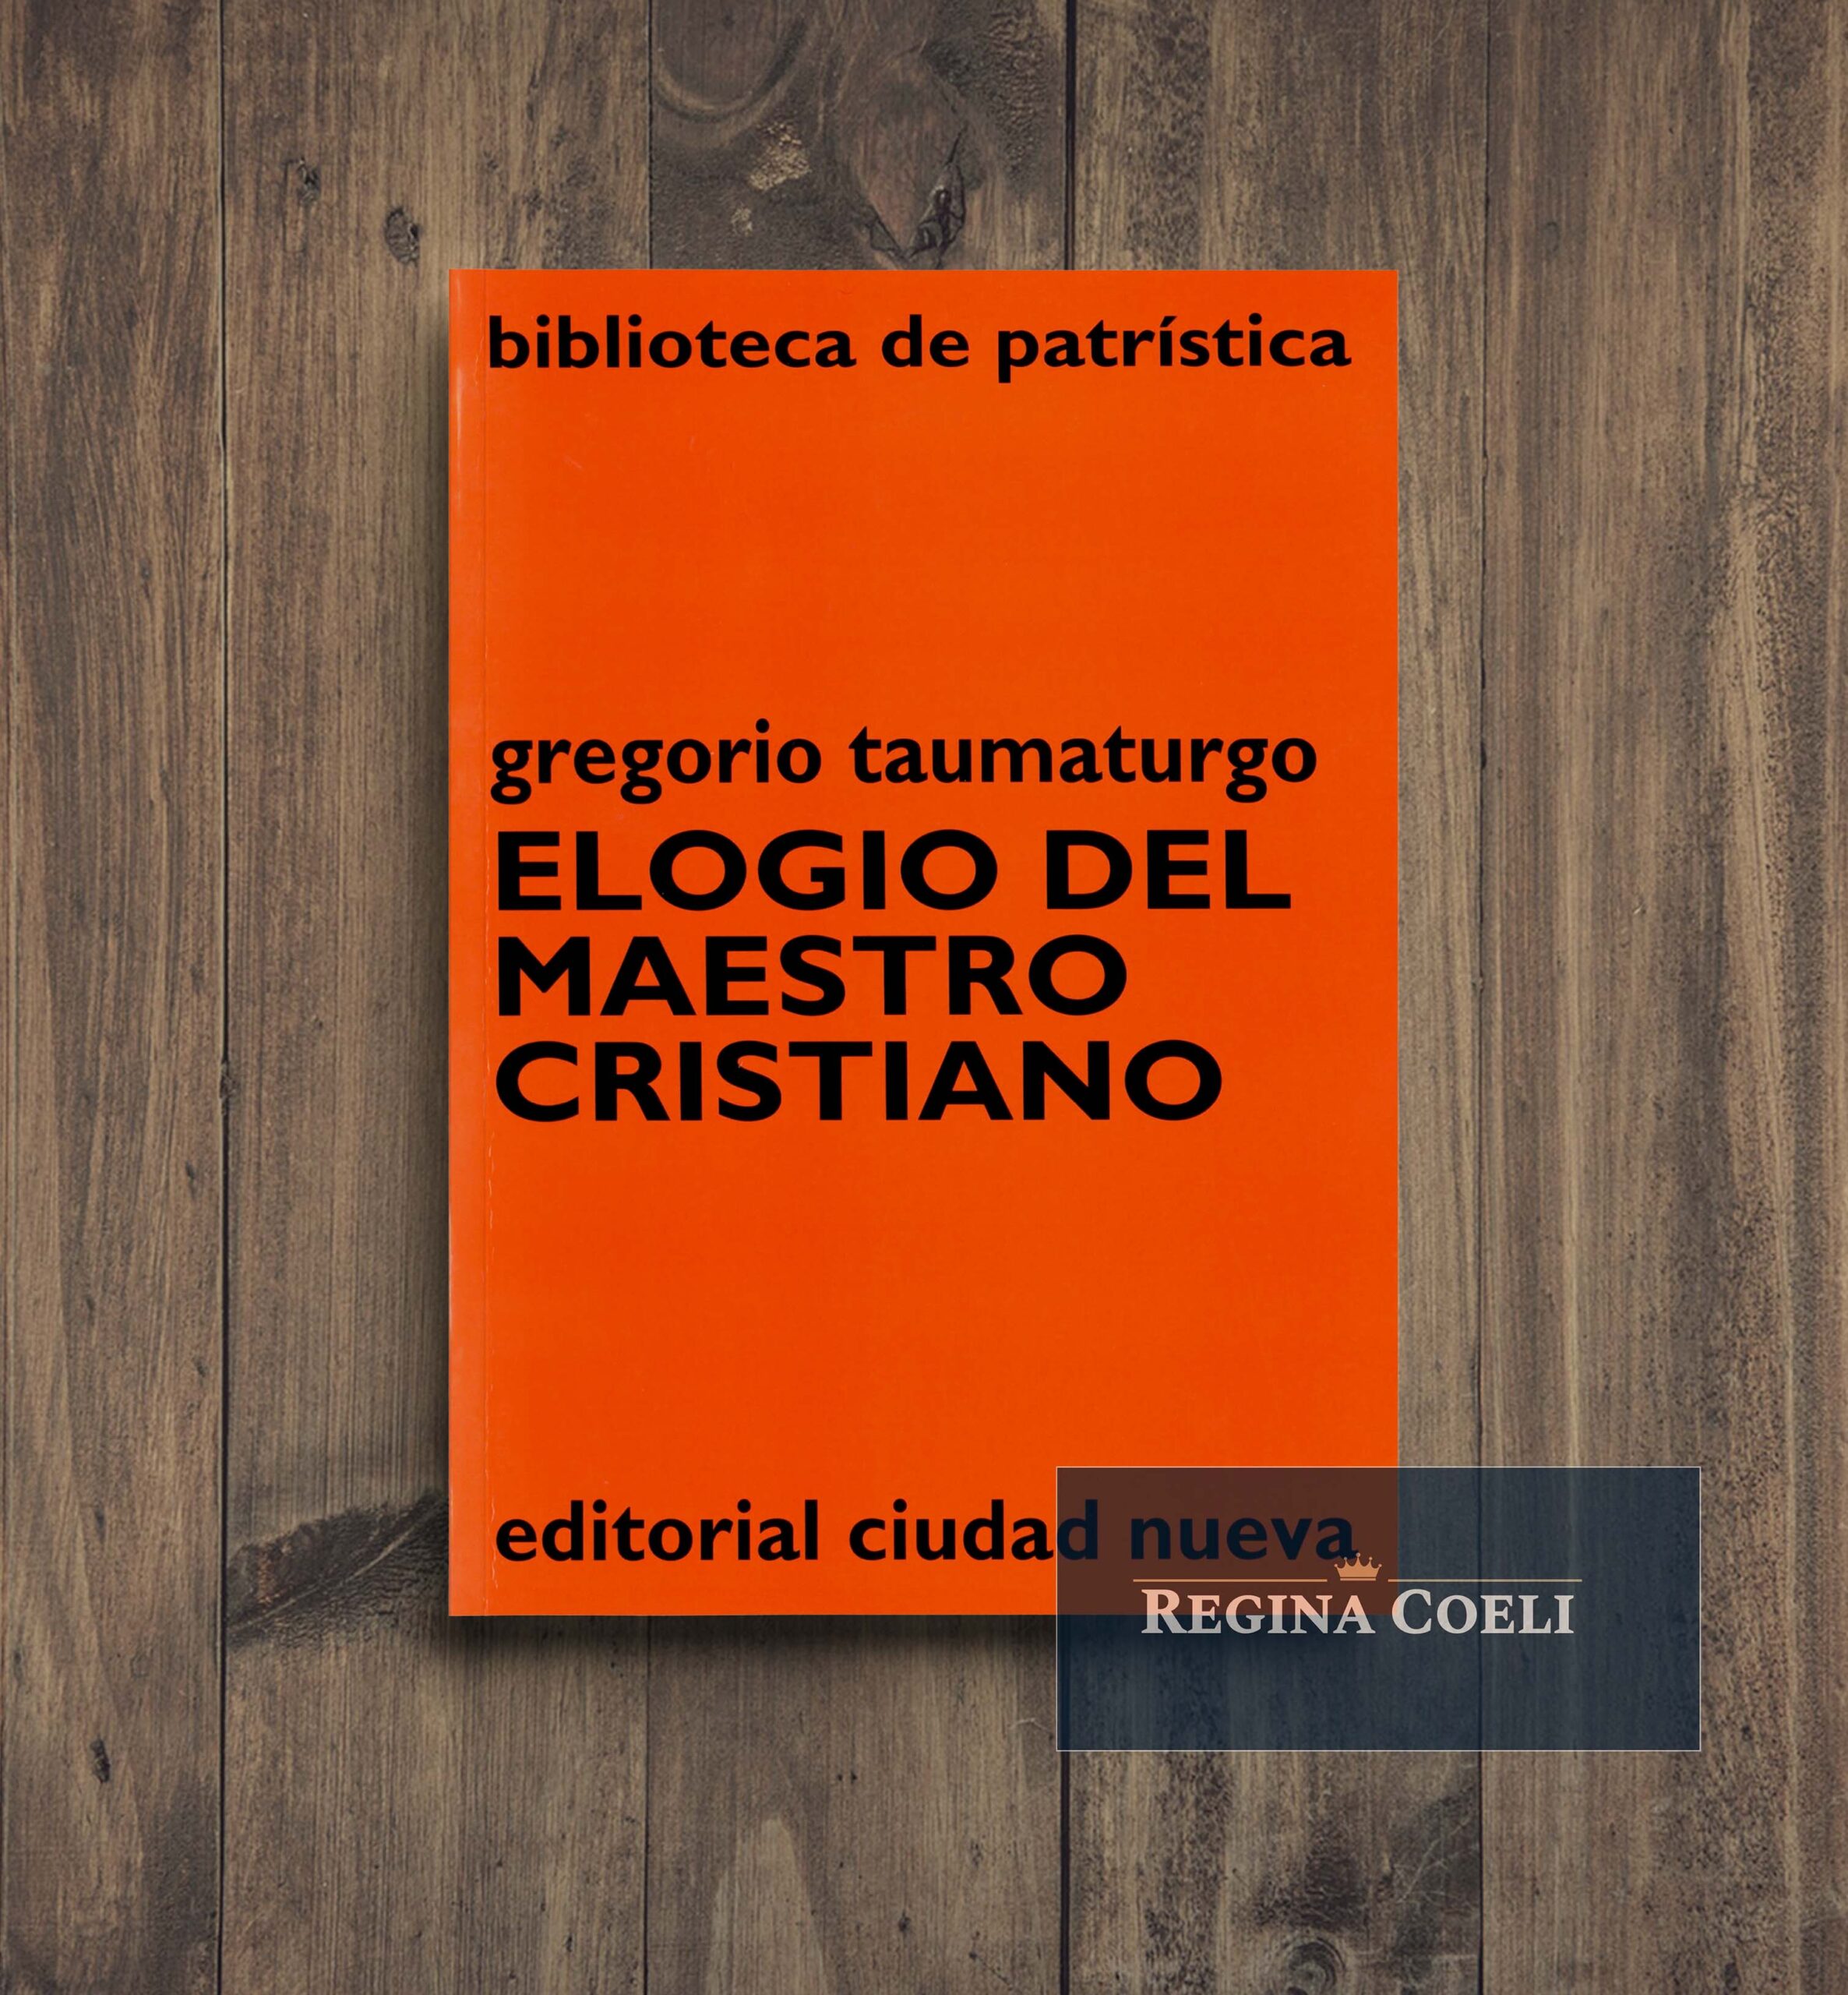 ELOGIO DEL MAESTRO CRISTIANO (BPa, 10)